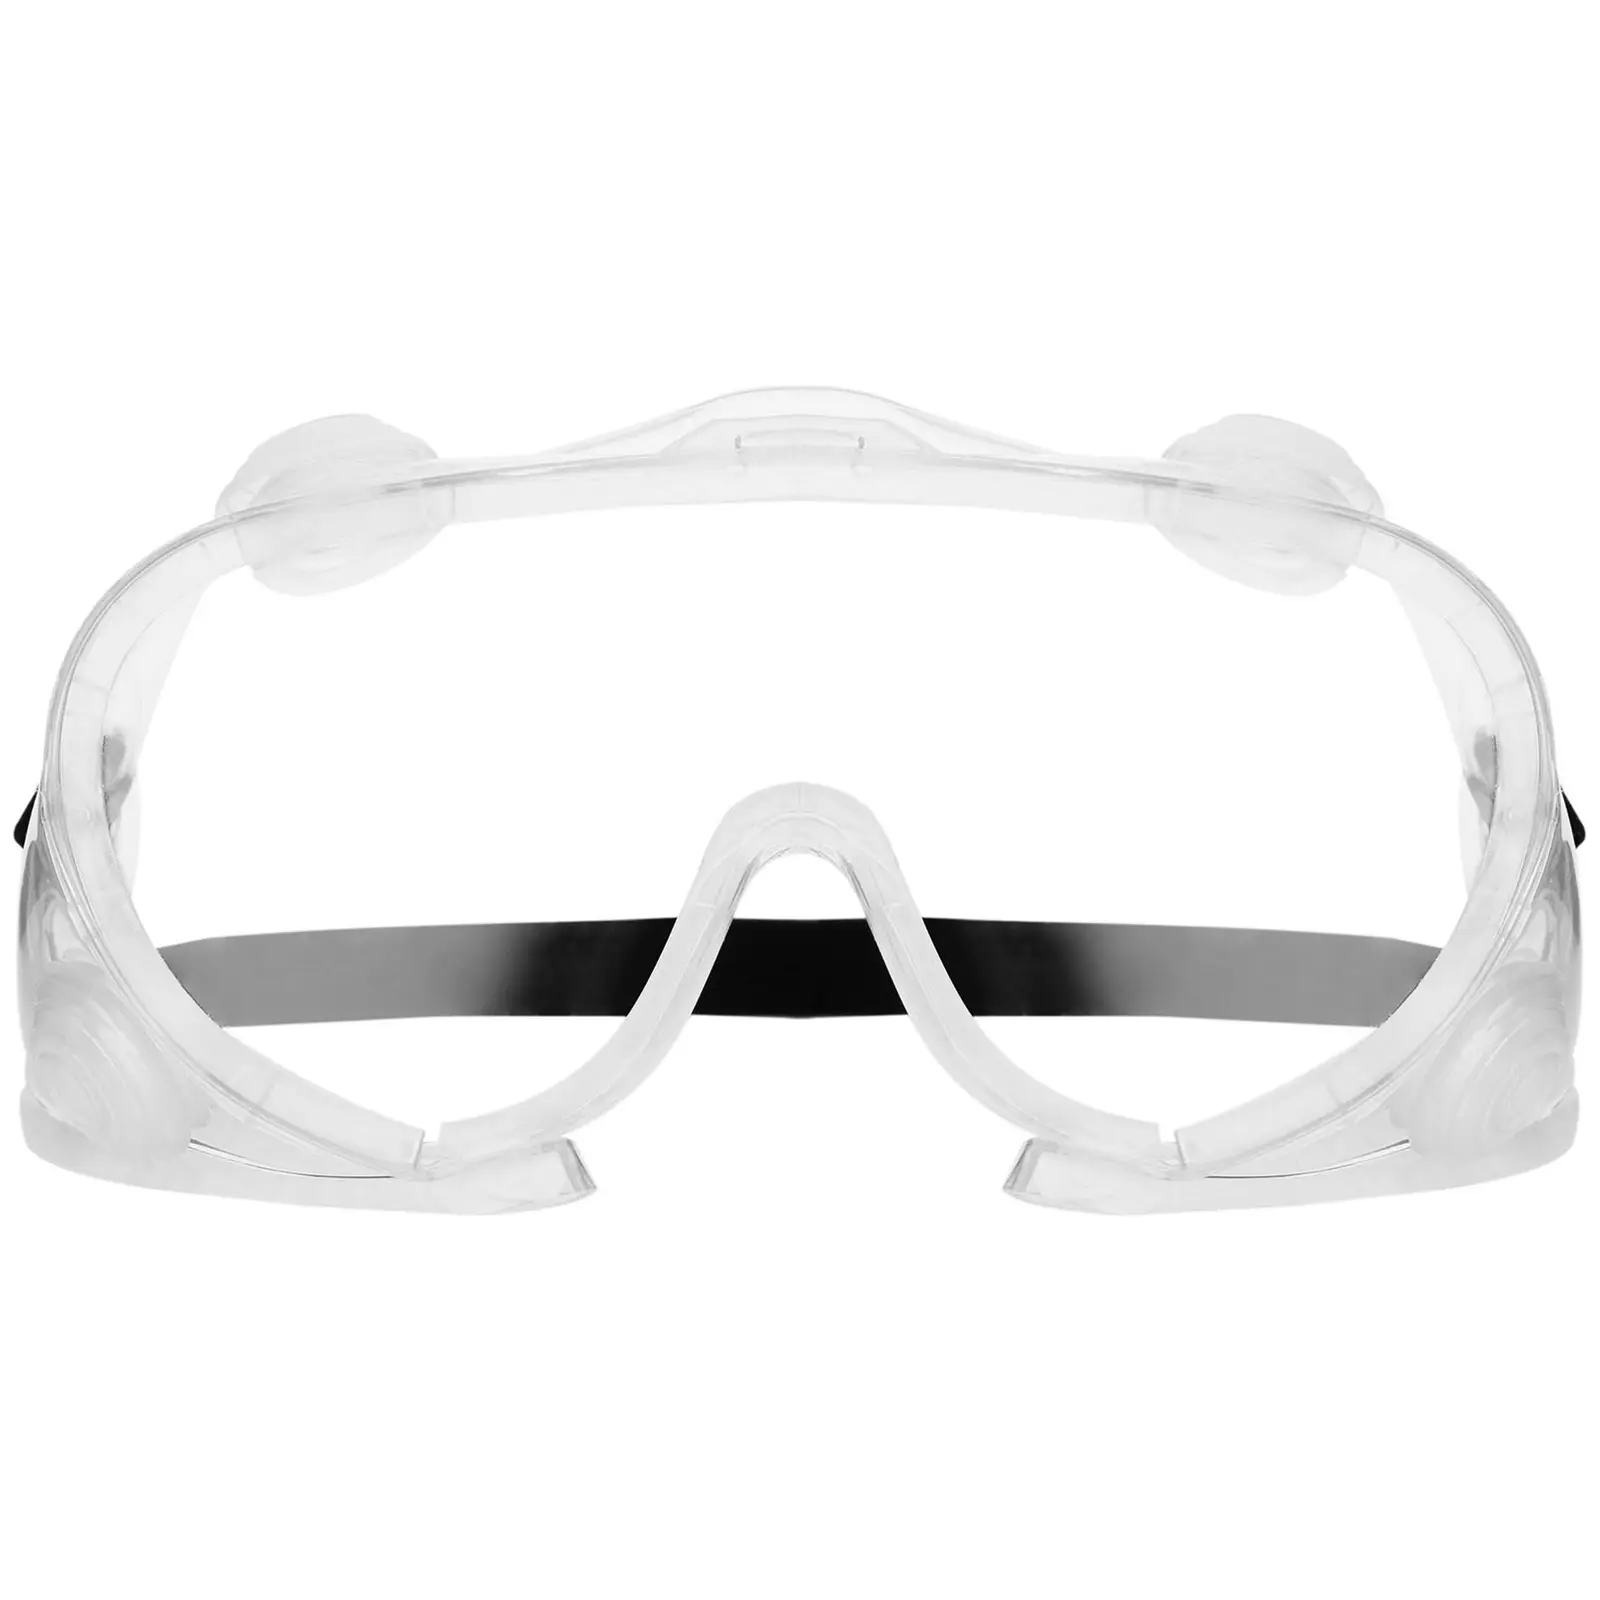 Schutzbrille - 10er Set - klar - Einheitsgröße